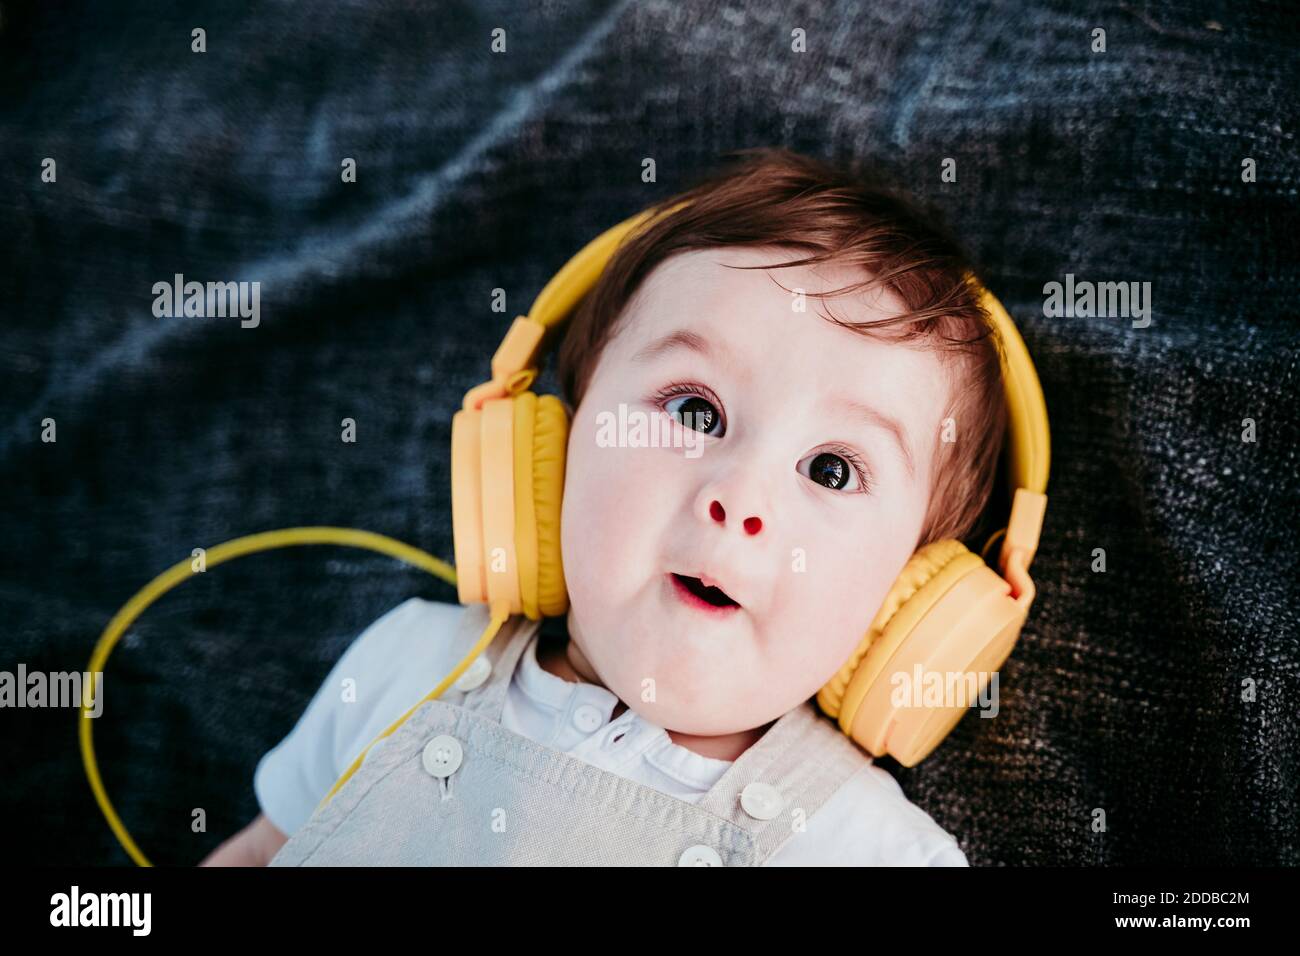 Niedlicher Baby Junge trägt Kopfhörer und macht Gesichtsausdruck beim  Liegen Auf Decke im Freien Stockfotografie - Alamy